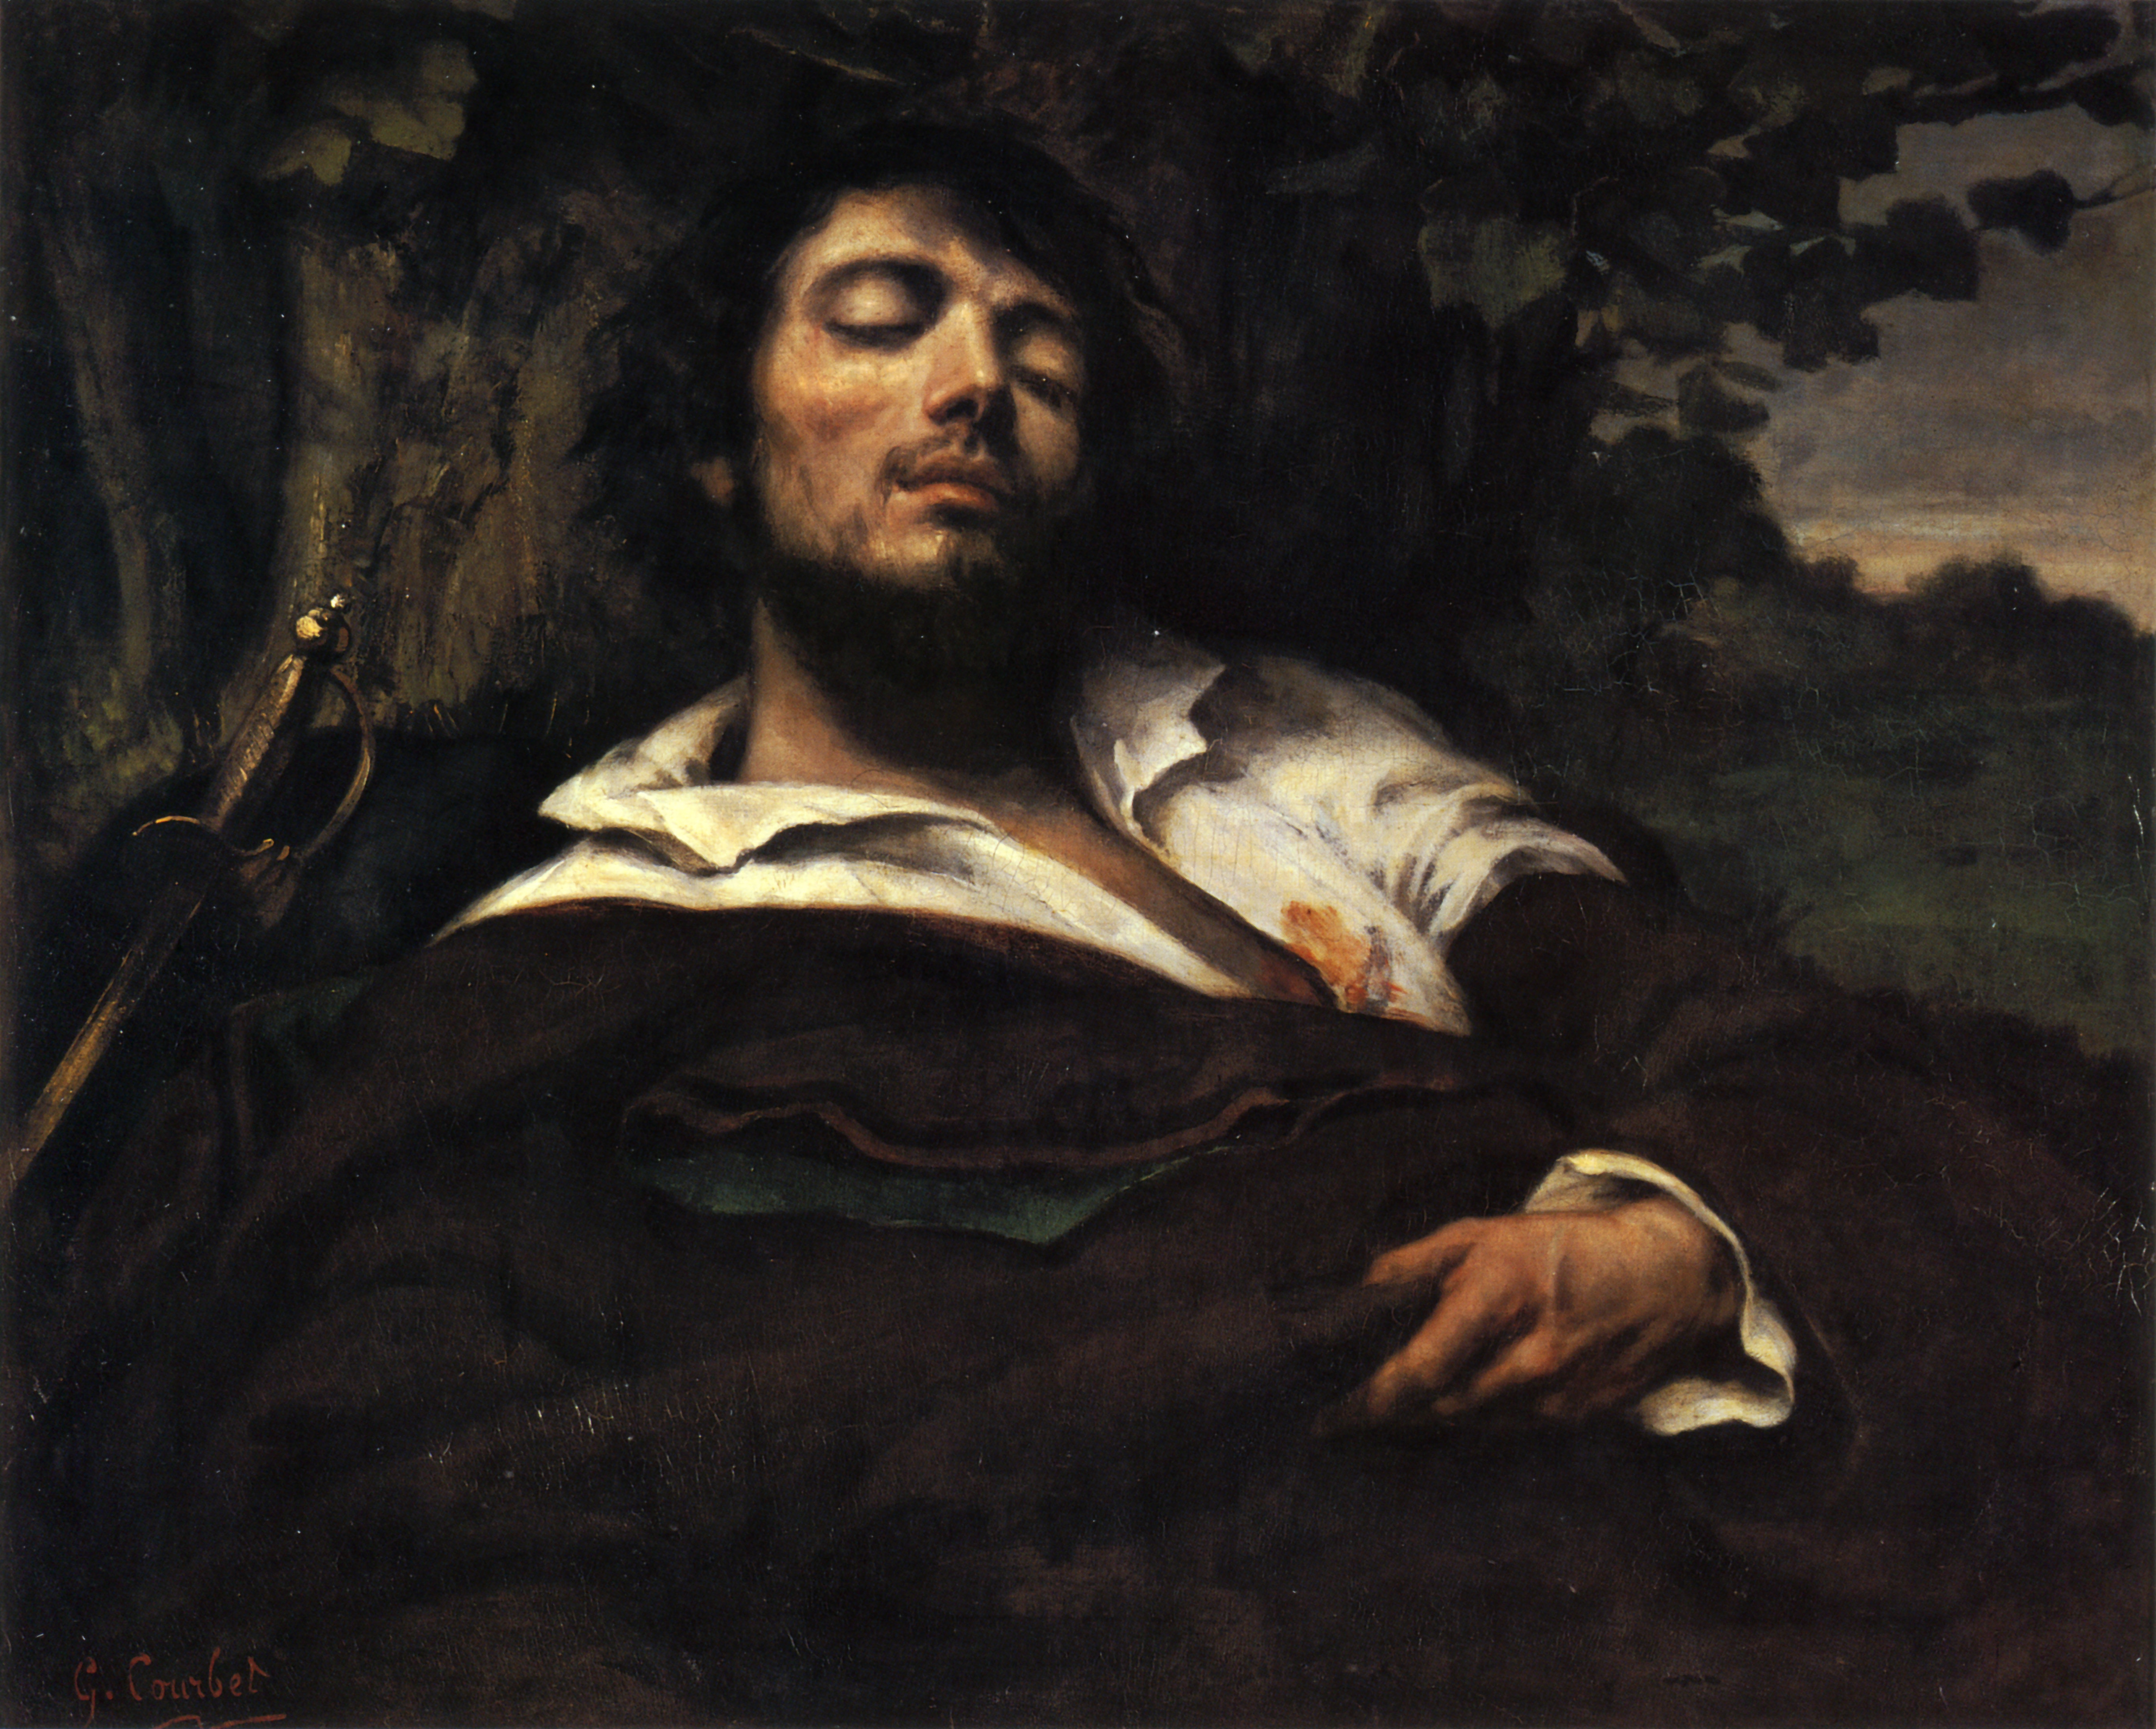 受傷男人的藝術家肖像 by 古斯塔夫 庫爾貝 - 1844 - 1855間 - 81.5 × 97.5 公分 